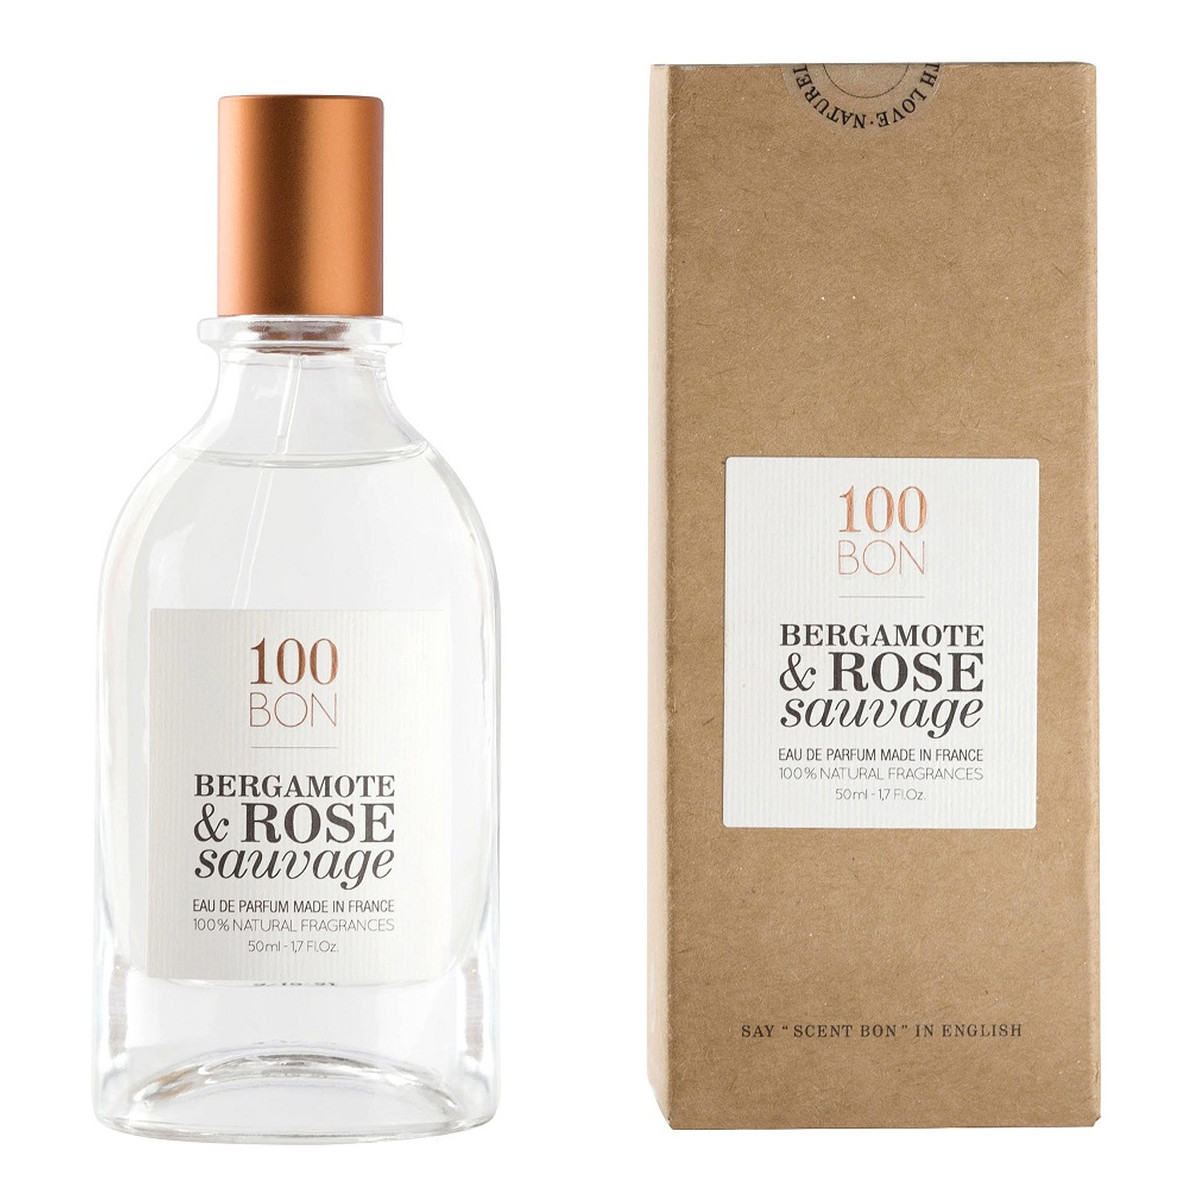 100 BON Bergamote & Rose Sauvage Woda perfumowana spray 50ml